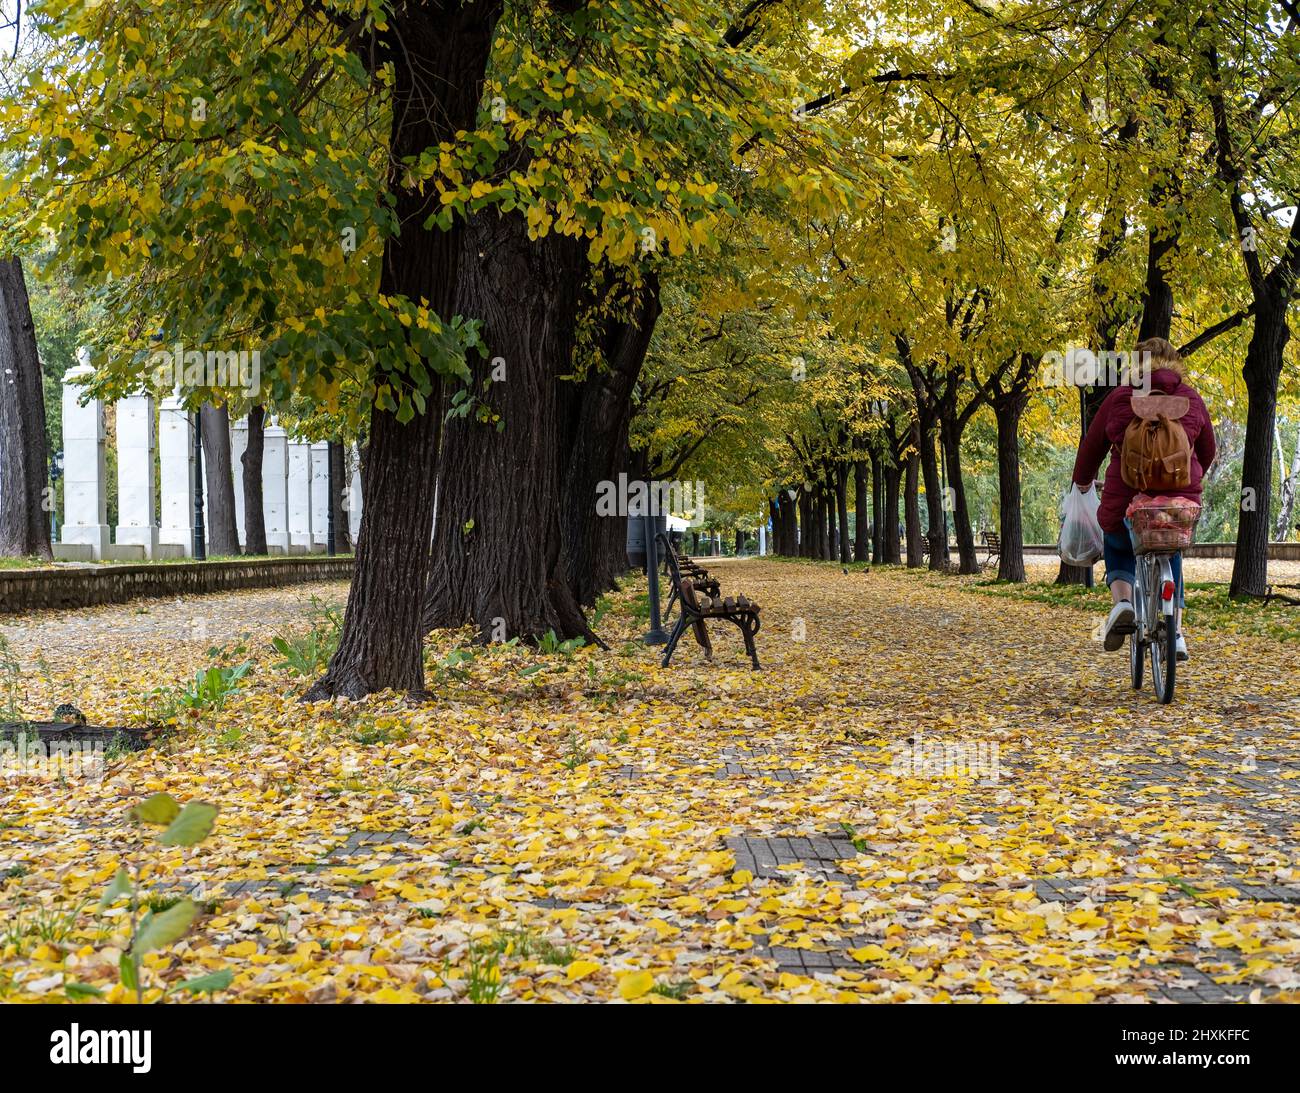 À vélo en automne. Les femmes passent un vélo pour rentrer chez elles après avoir fait du shopping. Belle photo d'un parc avec des feuilles jaunes avec feuillage d'automne Banque D'Images